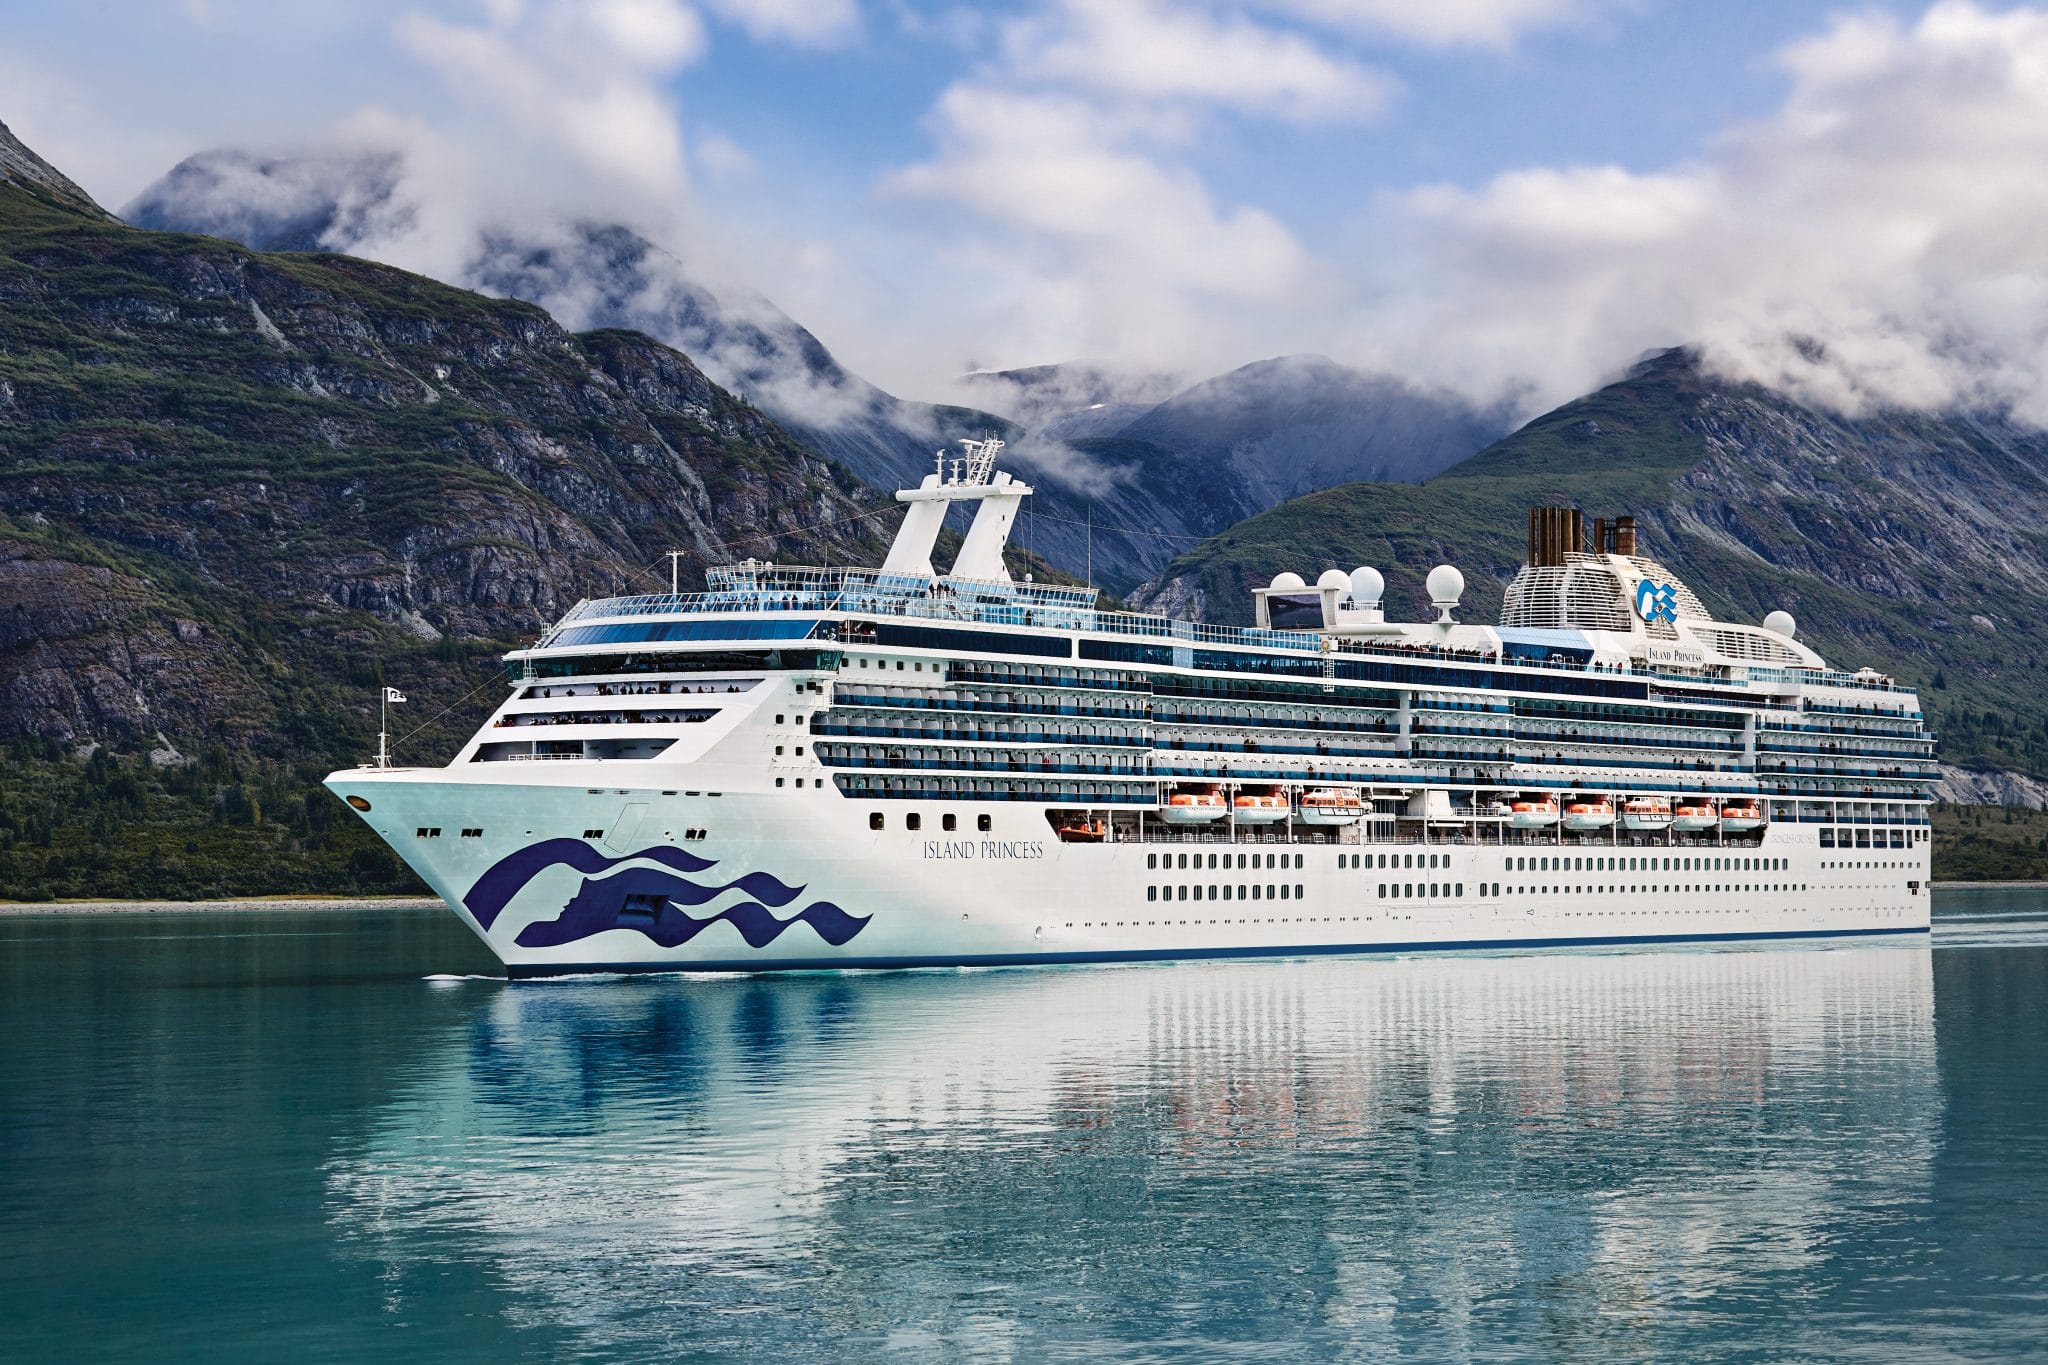 Ra mắt tour vòng quanh thế giới bằng du thuyền của Princess Cruises - 1